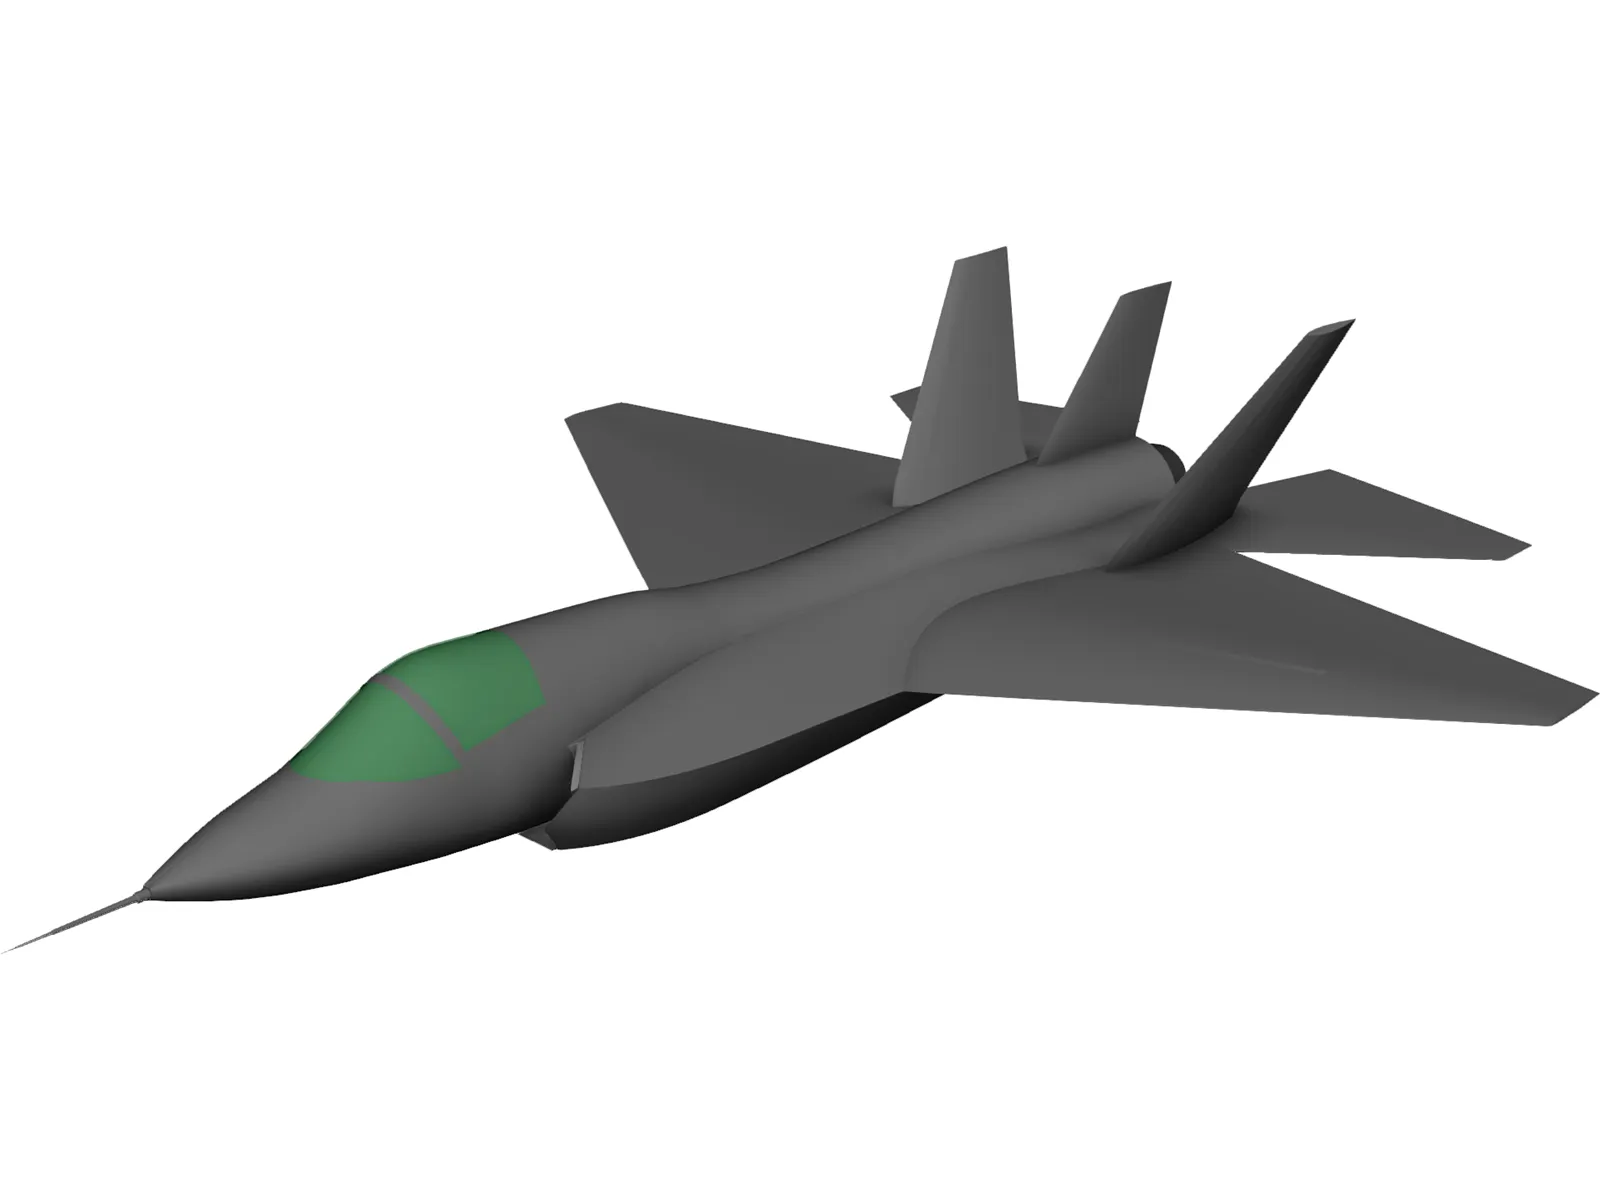 Lockheed Martin JSF F-35 3D Model